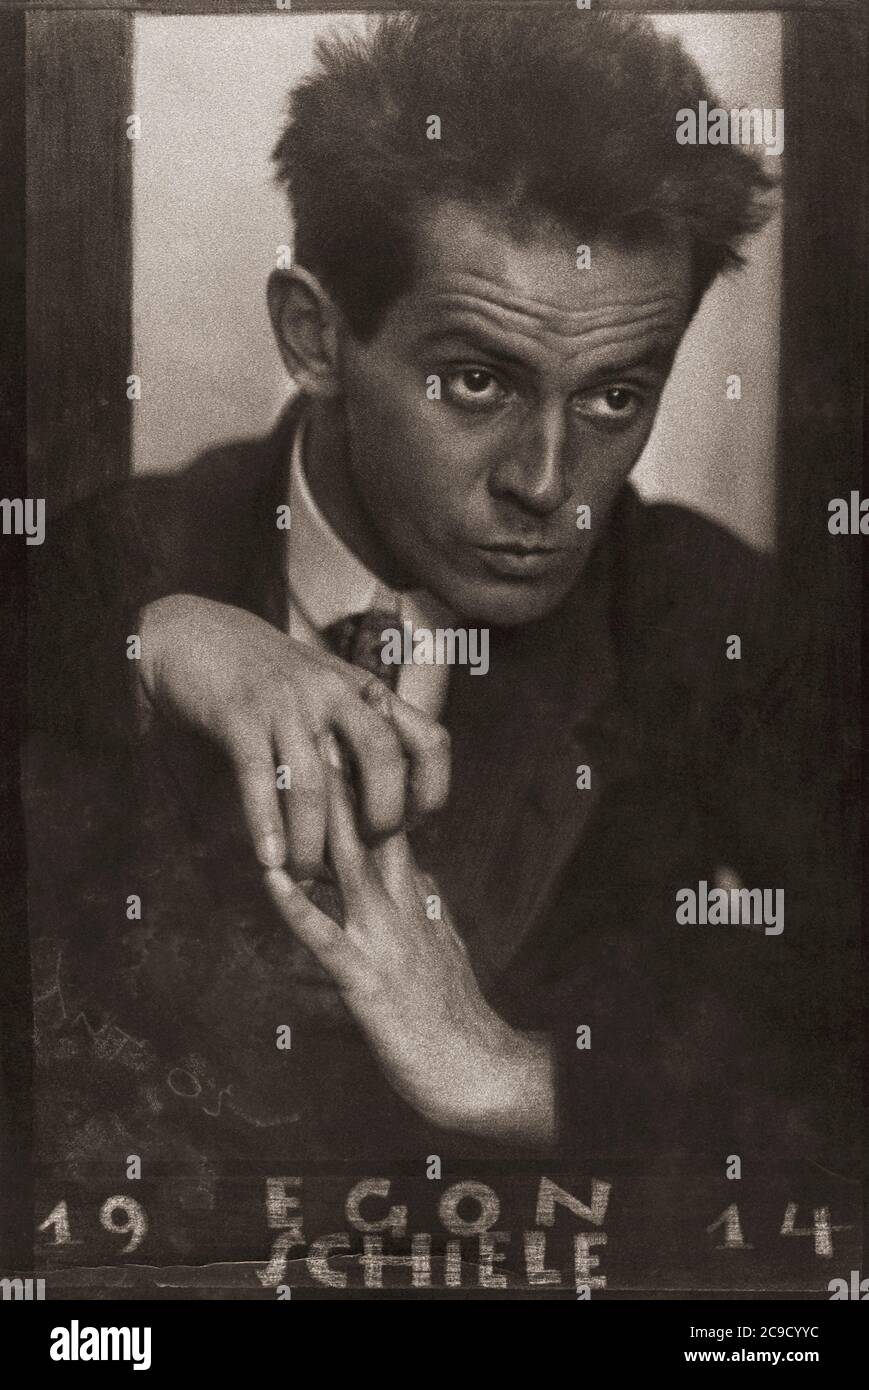 Egon Schiele, 1890 - 1918. Österreichischer Maler. Nach einem Porträt des österreichisch geborenen tschechischen Fotografen Anton Josef Trčka aus dem Jahr 1914. Trčka unterschrieb sein Werk „Antios“. In dieser Fotografie ist das Pseudonym links unten grob zerkratzt. Stockfoto